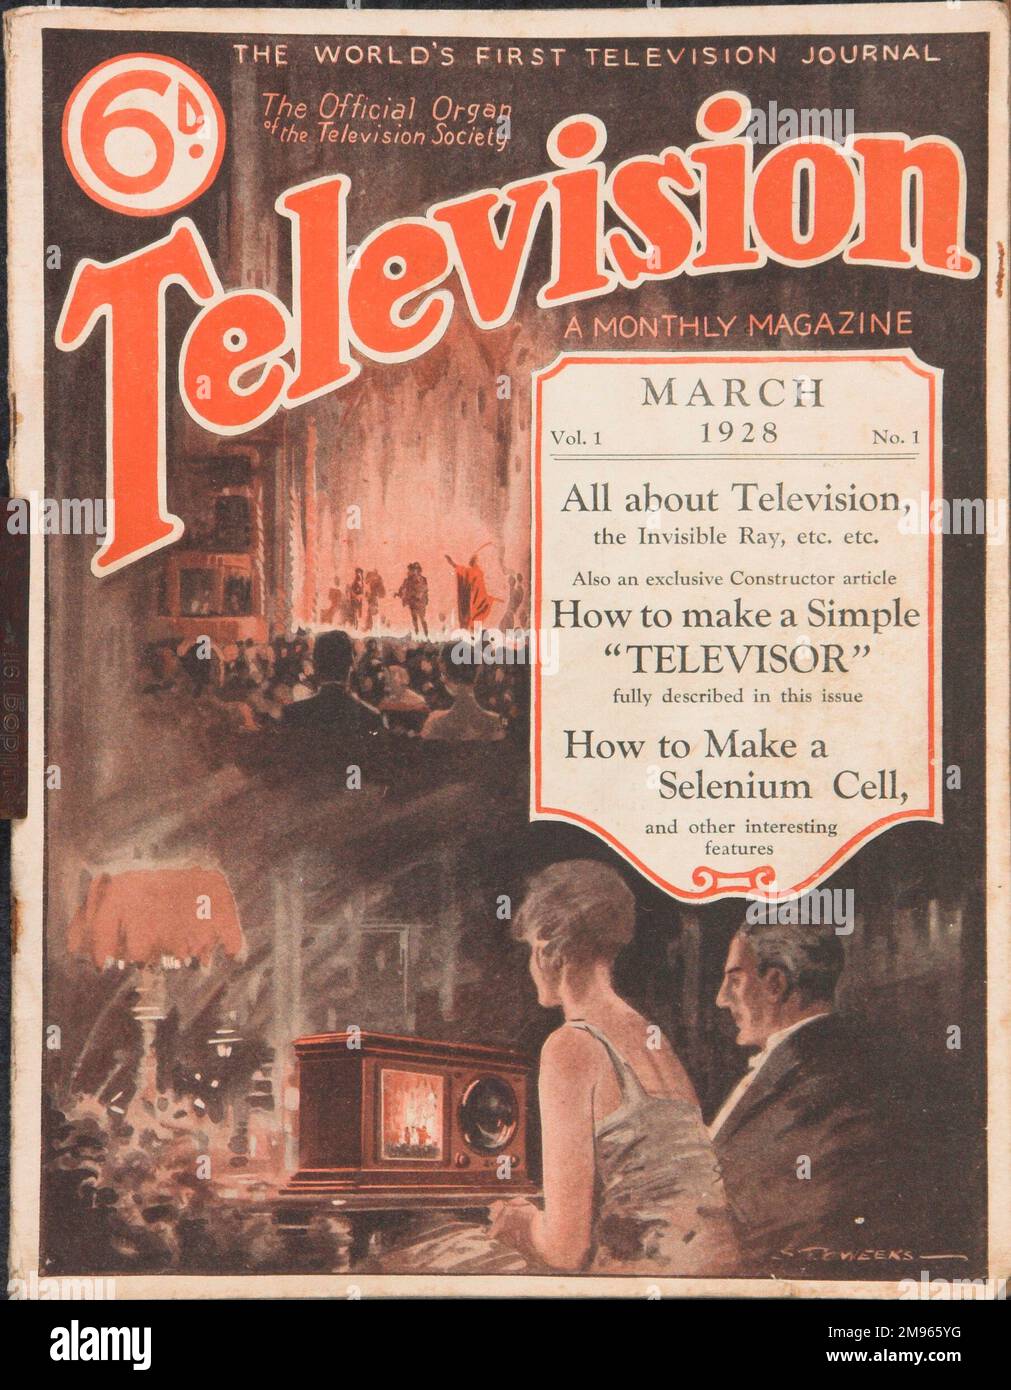 Design della copertina per la rivista Television, la prima rivista televisiva al mondo dal marzo 1928 al costo di 6d. I suoi contenuti includono come fare un semplice telvisore e come fare una cellula di selenio. Foto Stock